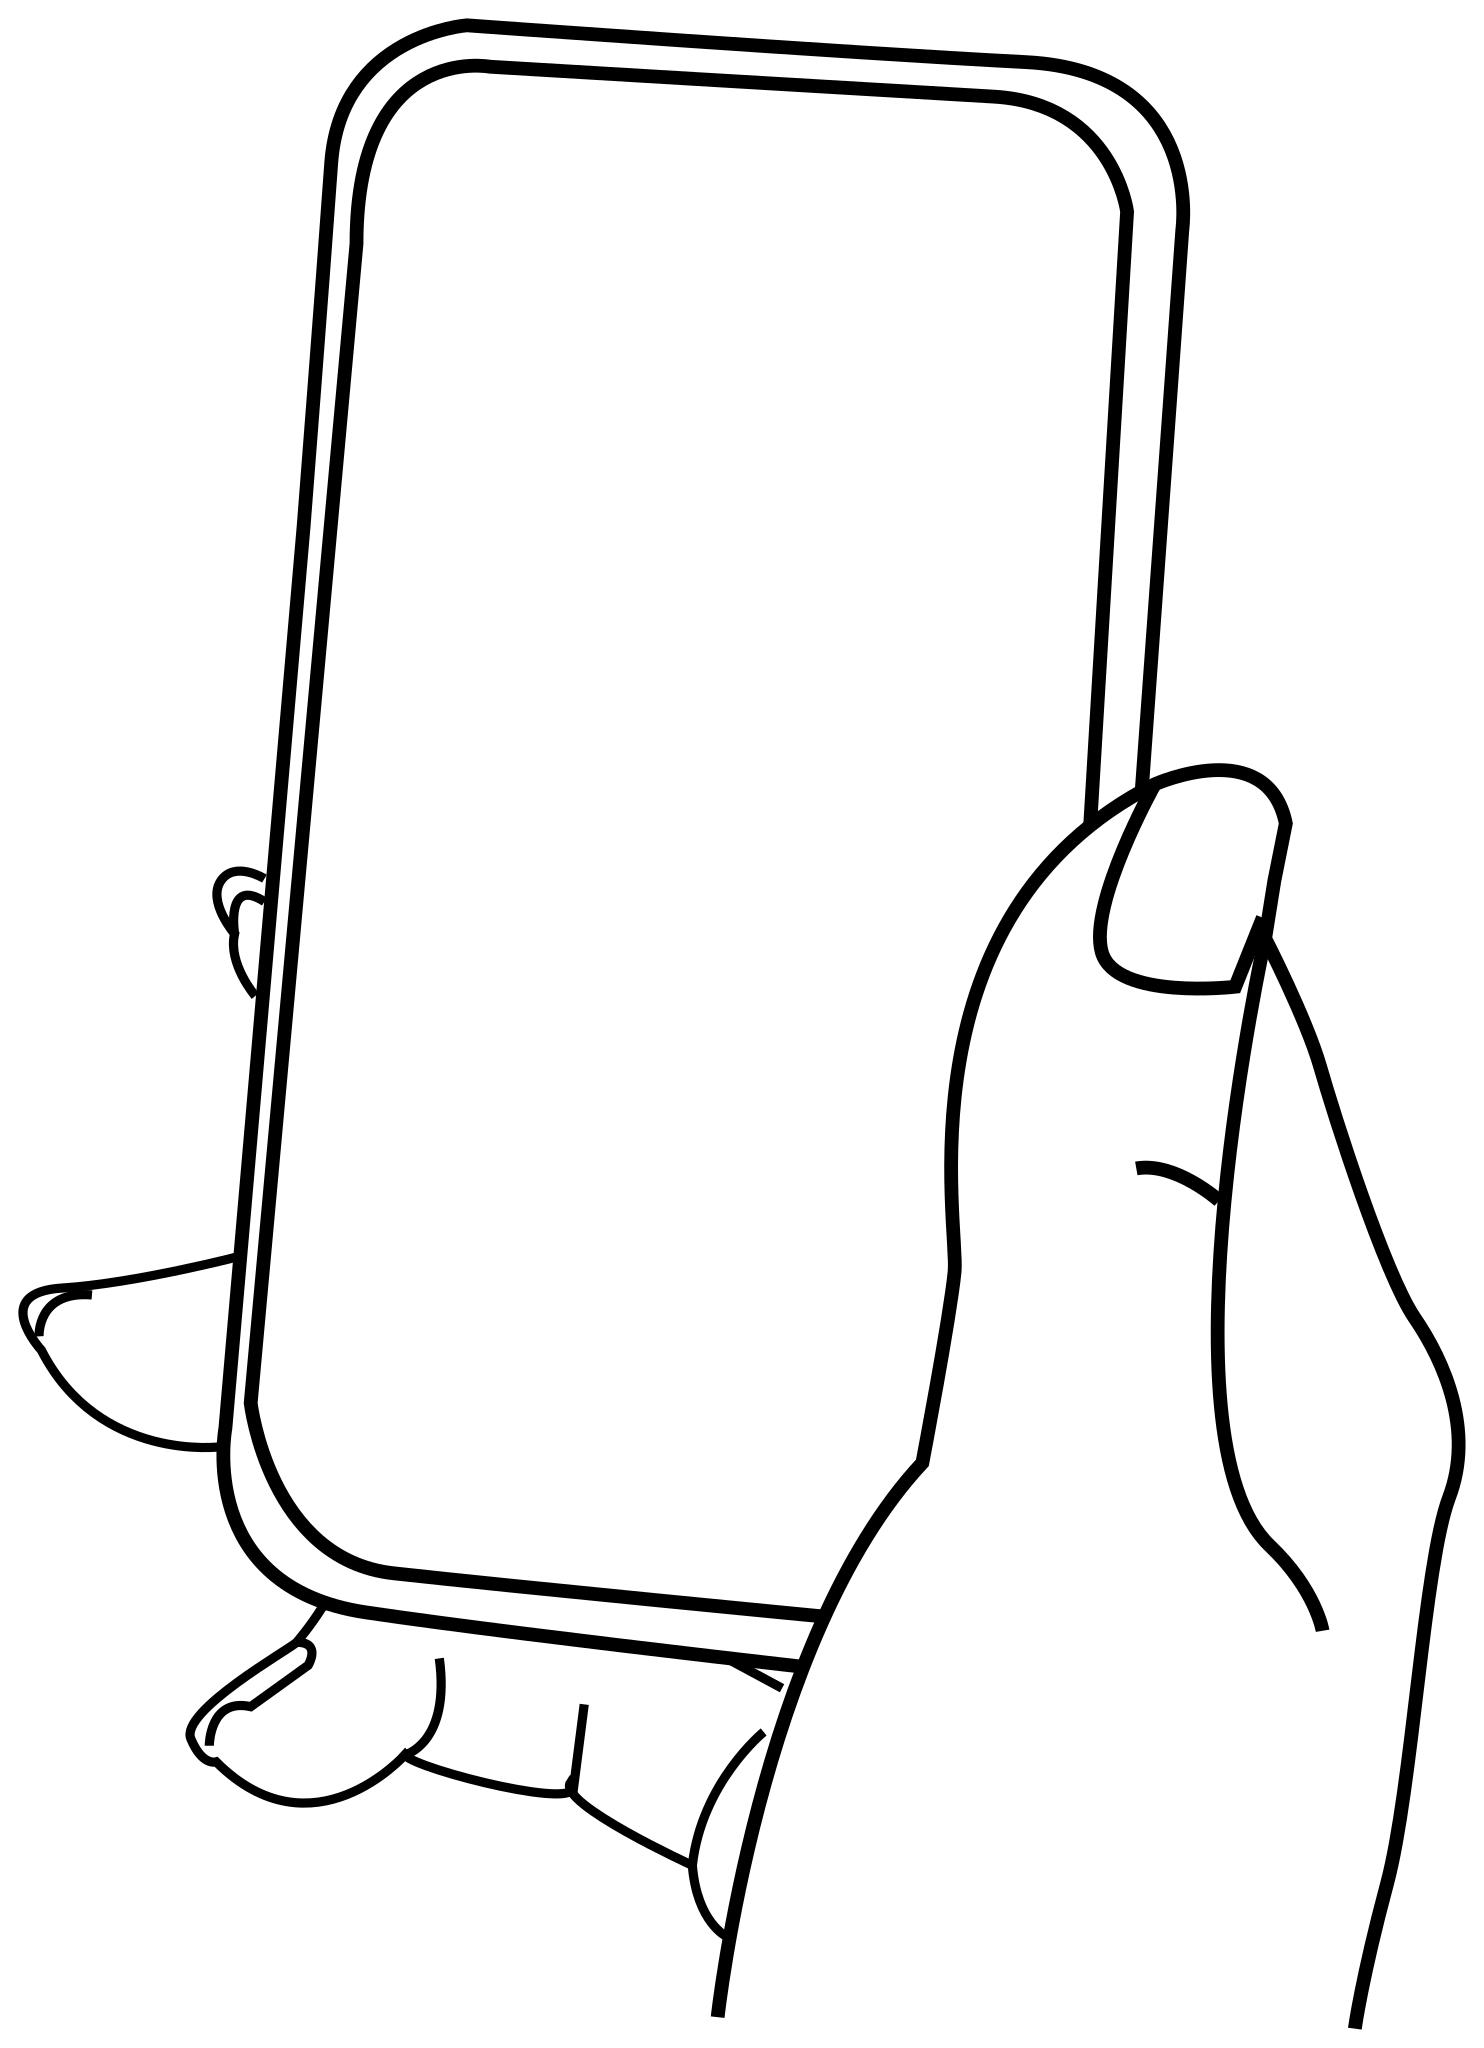 Нарисованный айфон в руках